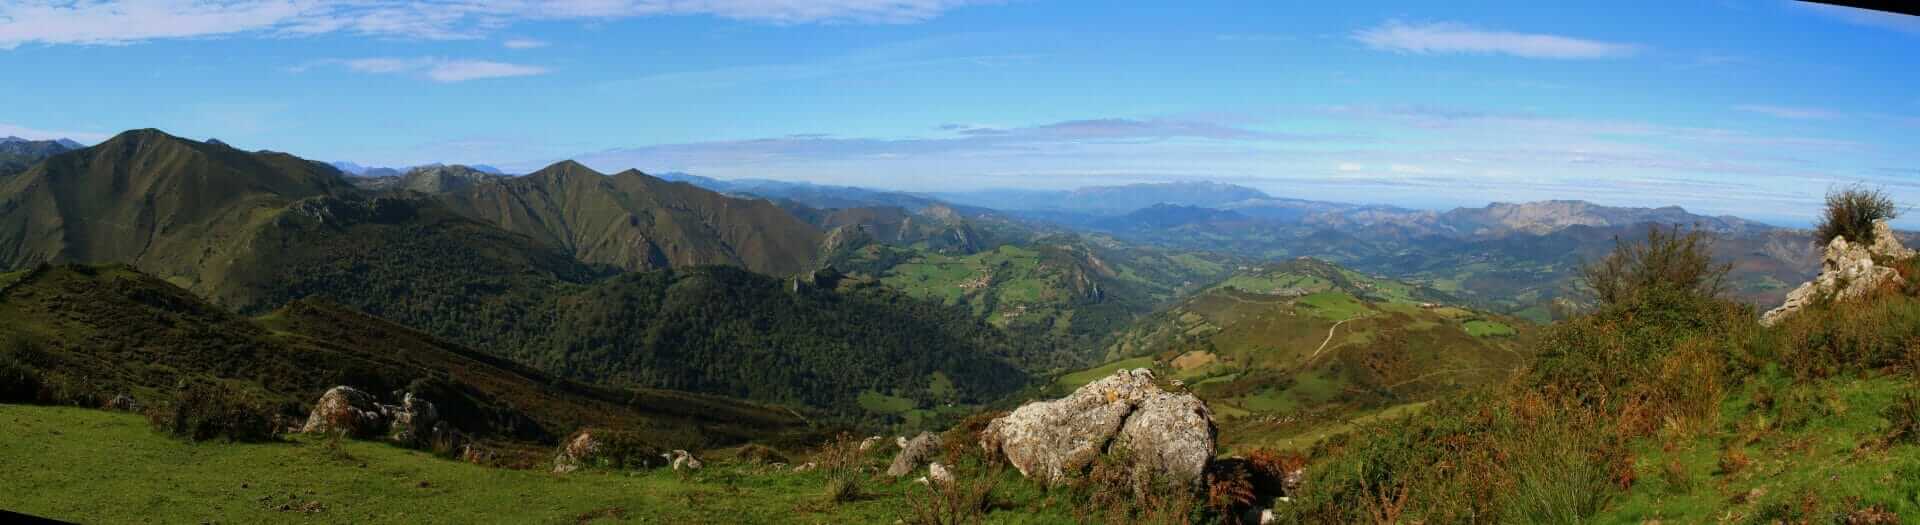 The Pandescura, Onis, Asturias